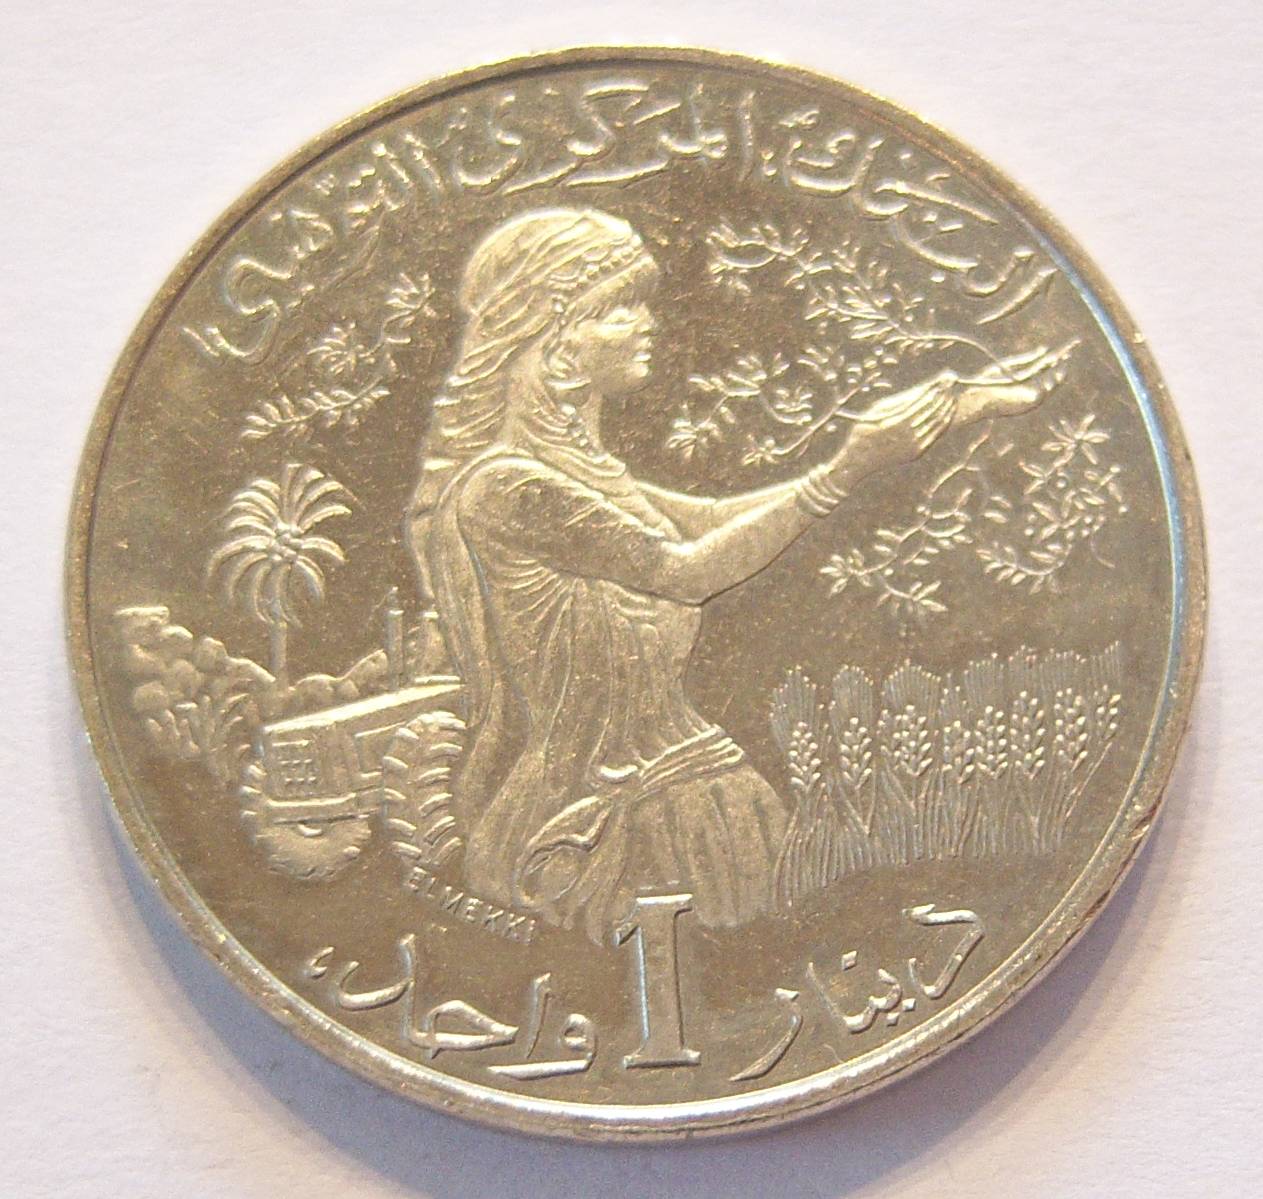  Tunesien 1 Dinar 1983   